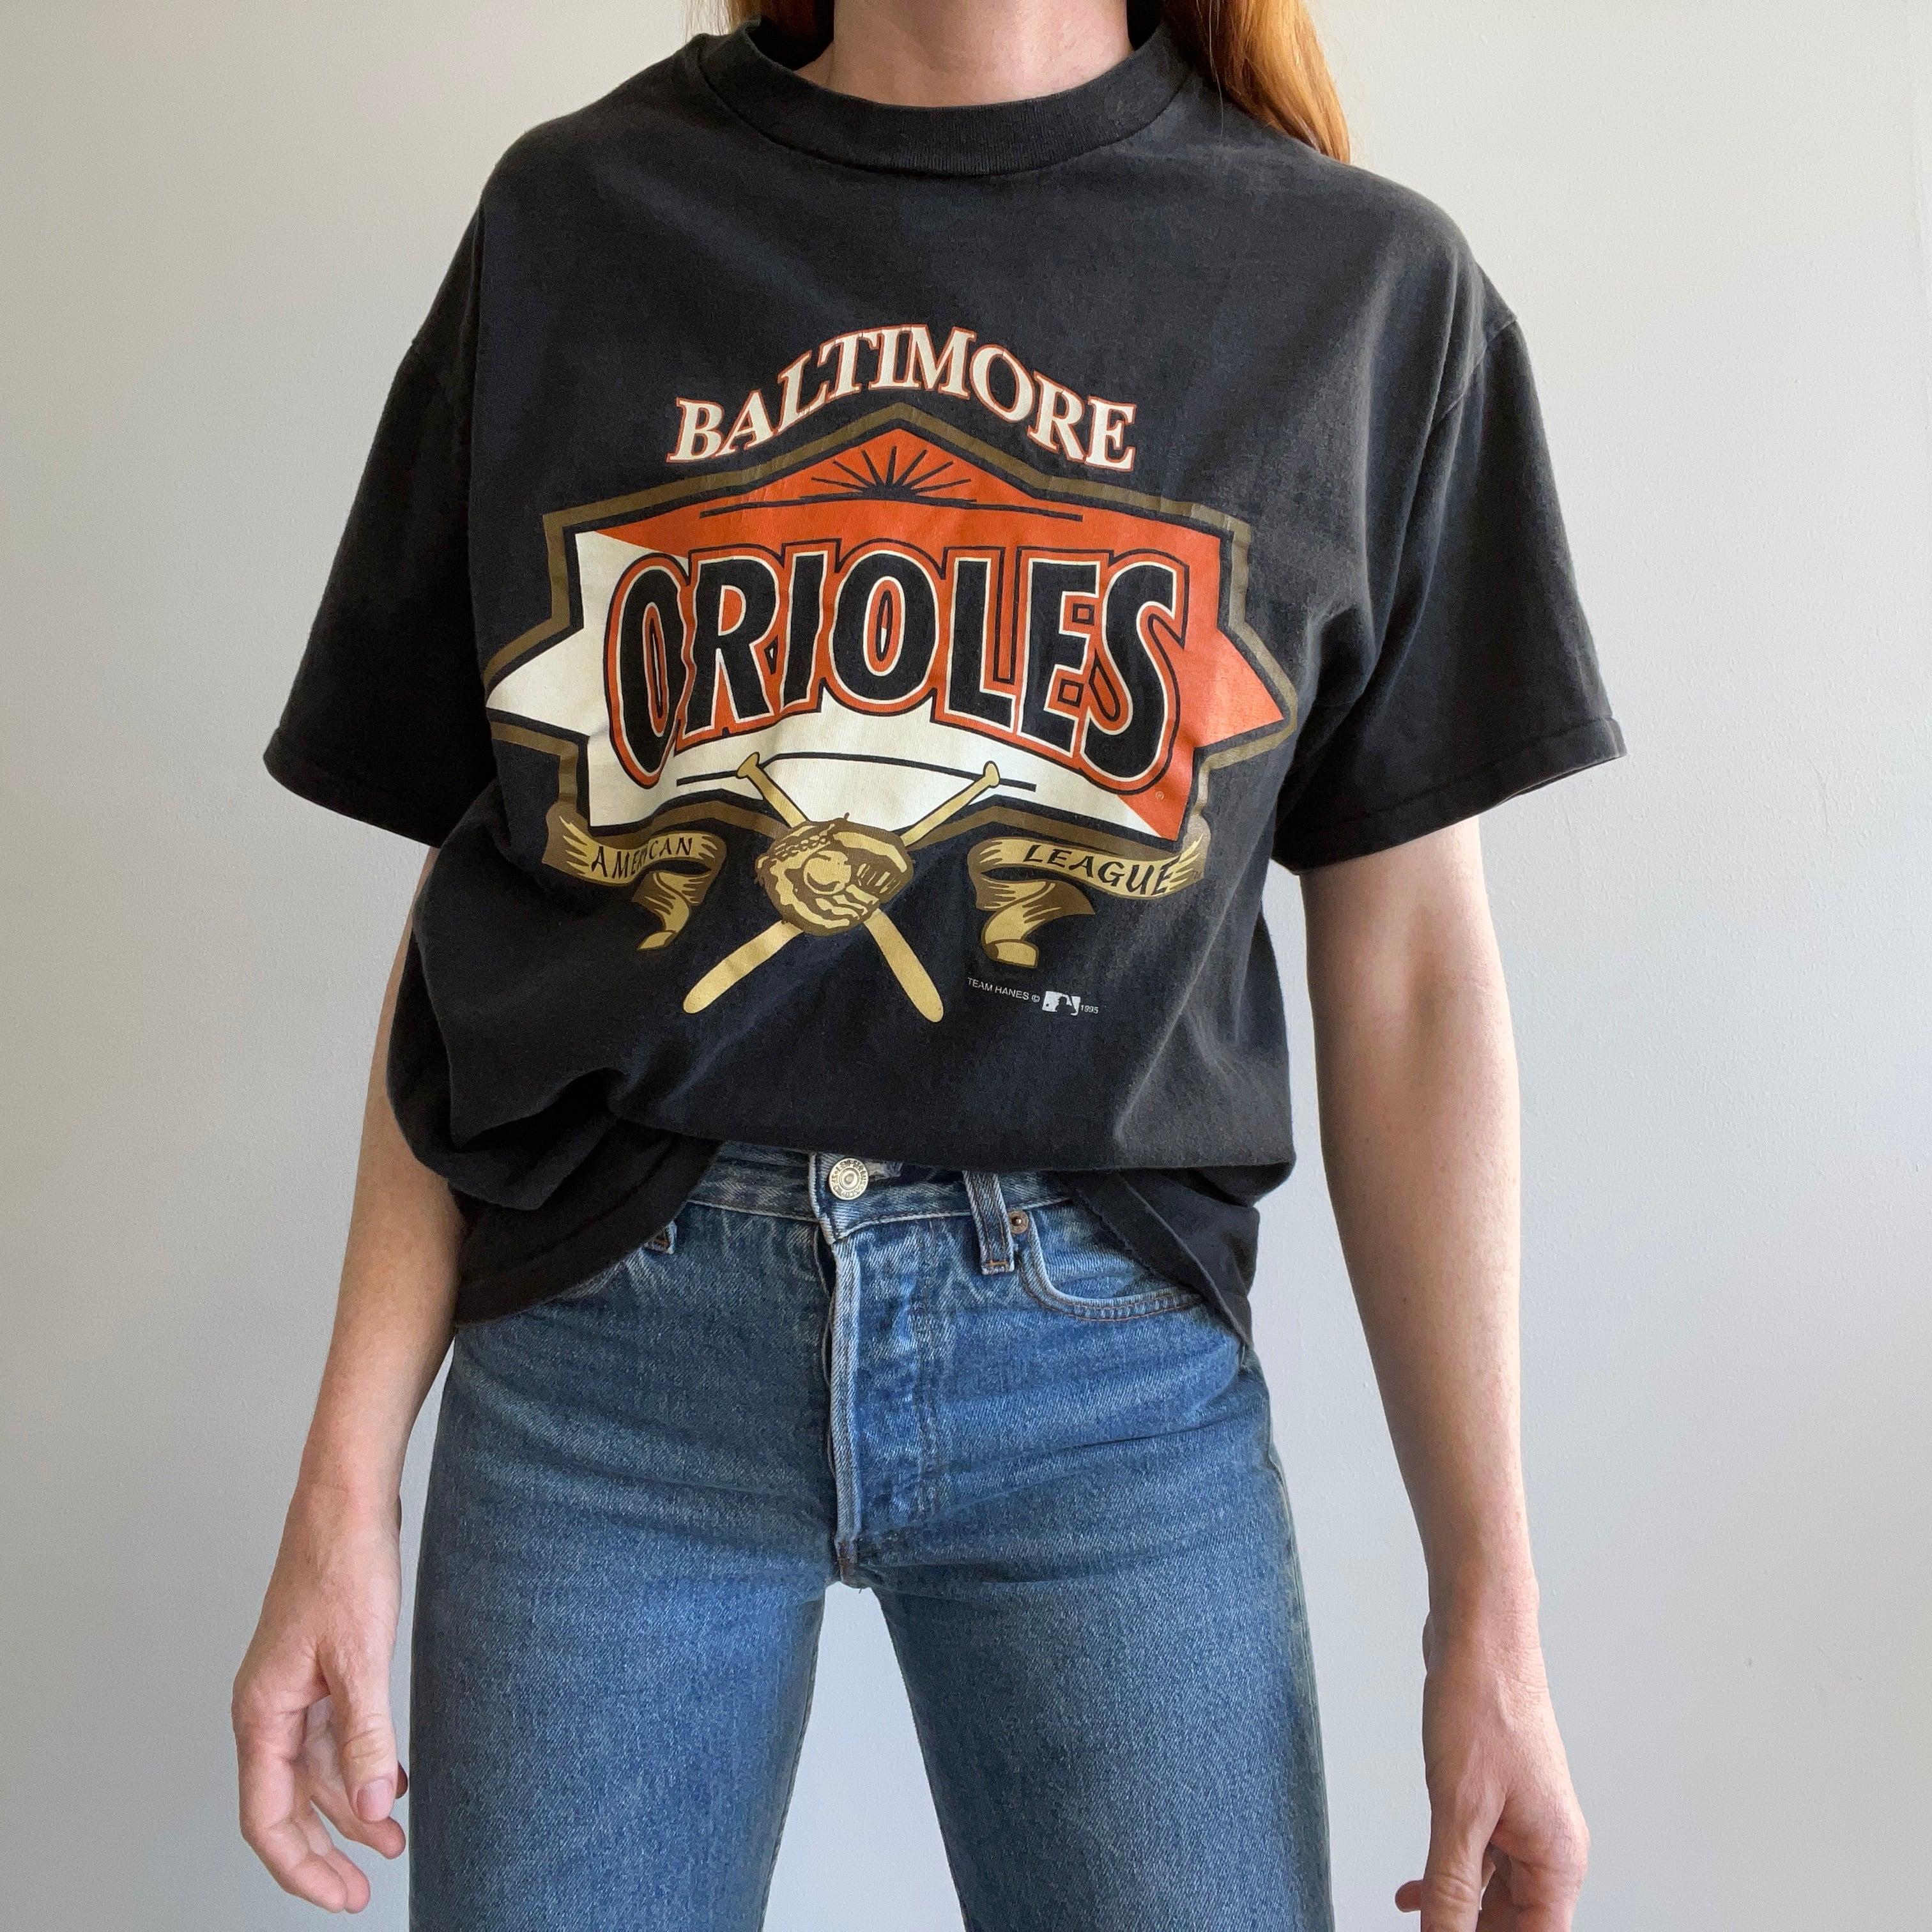 Baltimore Orioles Stitch Baseball Jersey -  Worldwide Shipping